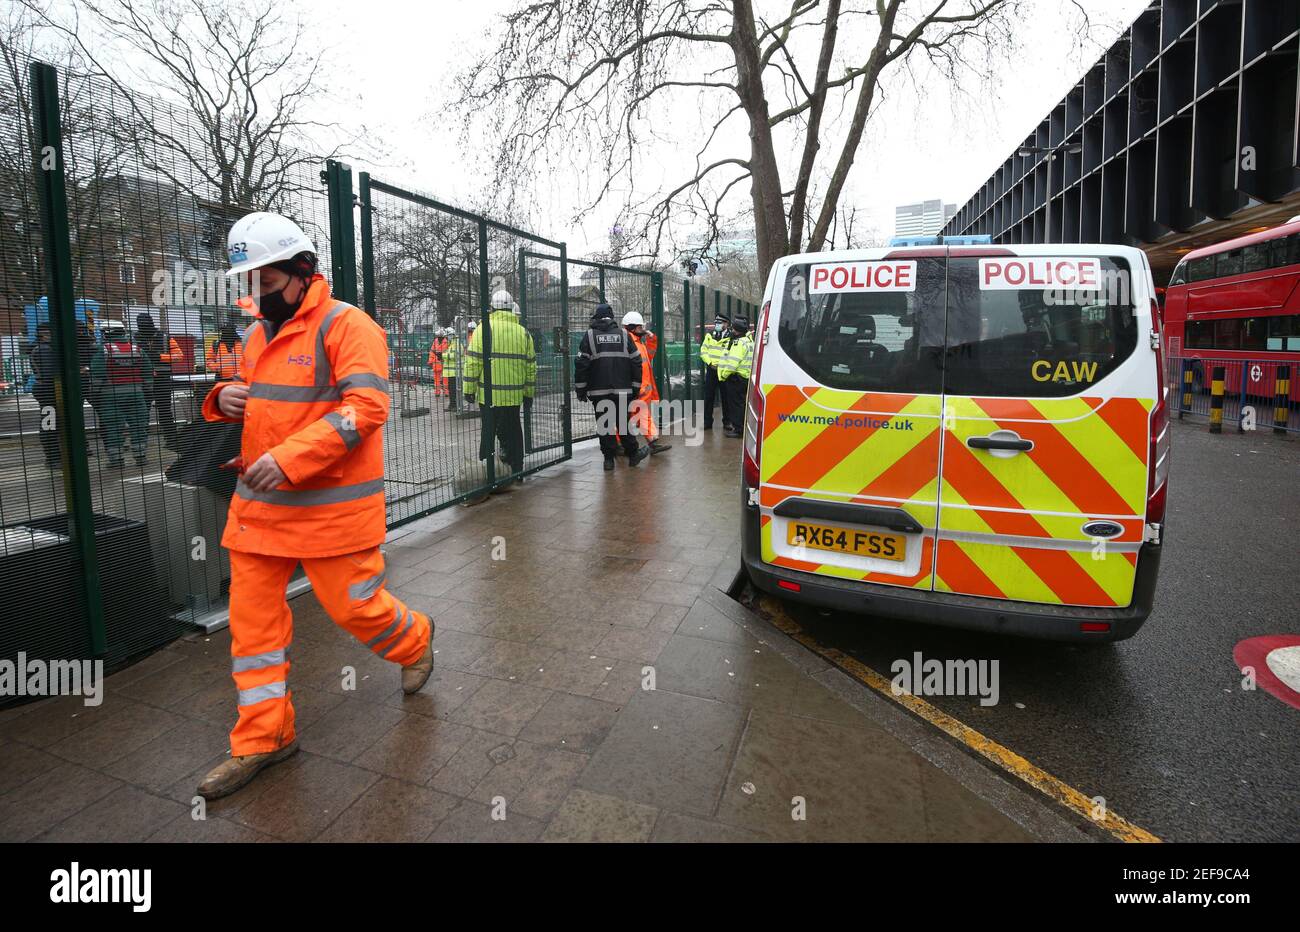 Polizeibeamte in Euston Square Gardens, London, nachdem ein Anti-HS2-Aktivist einen Tunnel von 100ft verlassen hatte, wo er protestiert hatte. Bilddatum: Mittwoch, 17. Februar 2021. Stockfoto